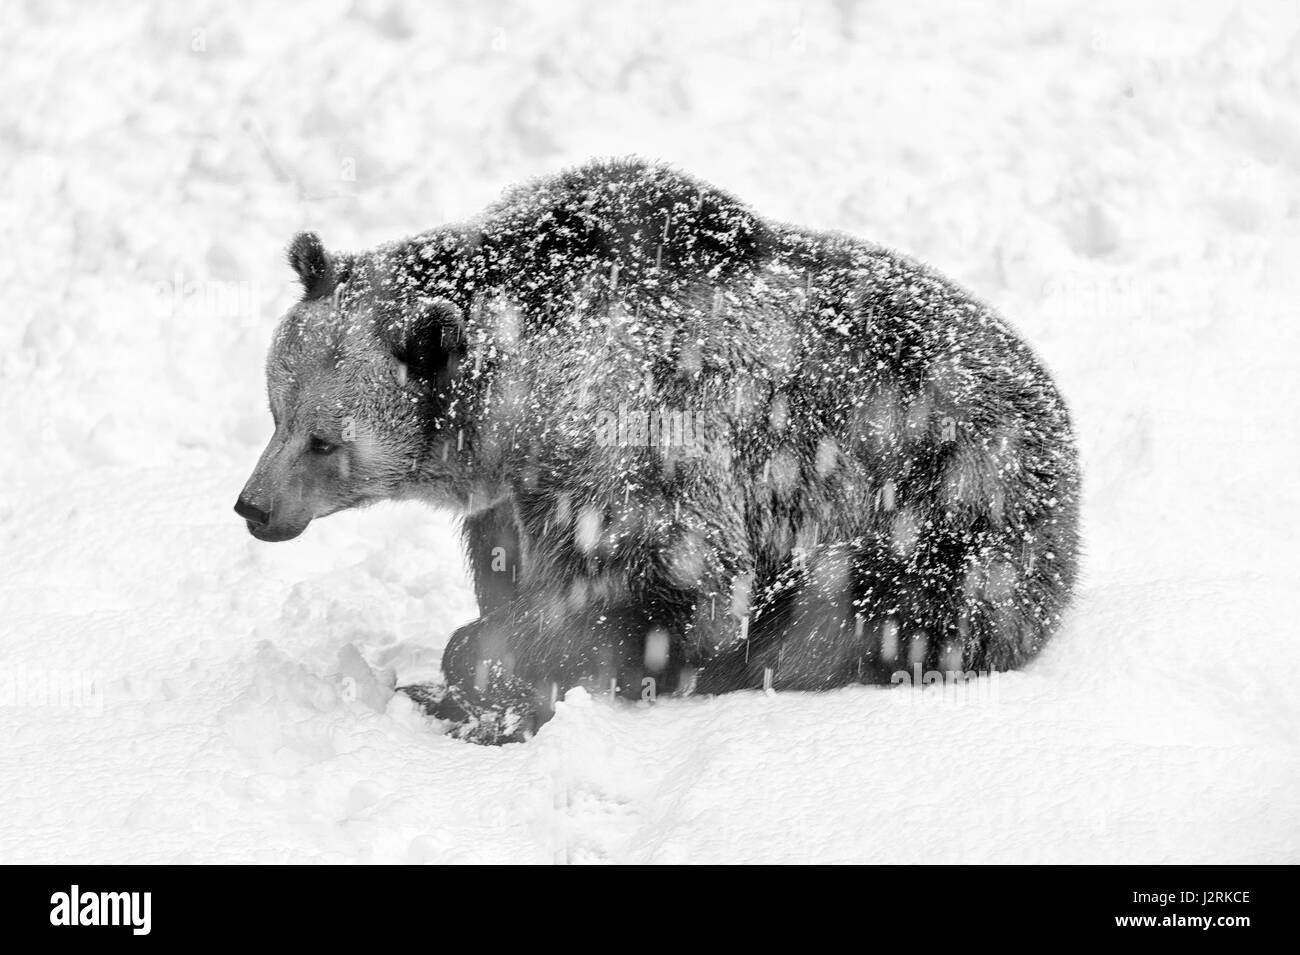 Solo para mujeres adultas Euroasiática de oso pardo (Ursus arctos) representado sentado en una tormenta de nieve en invierno. (Bellas Artes, High Key, Blanco y negro) Foto de stock